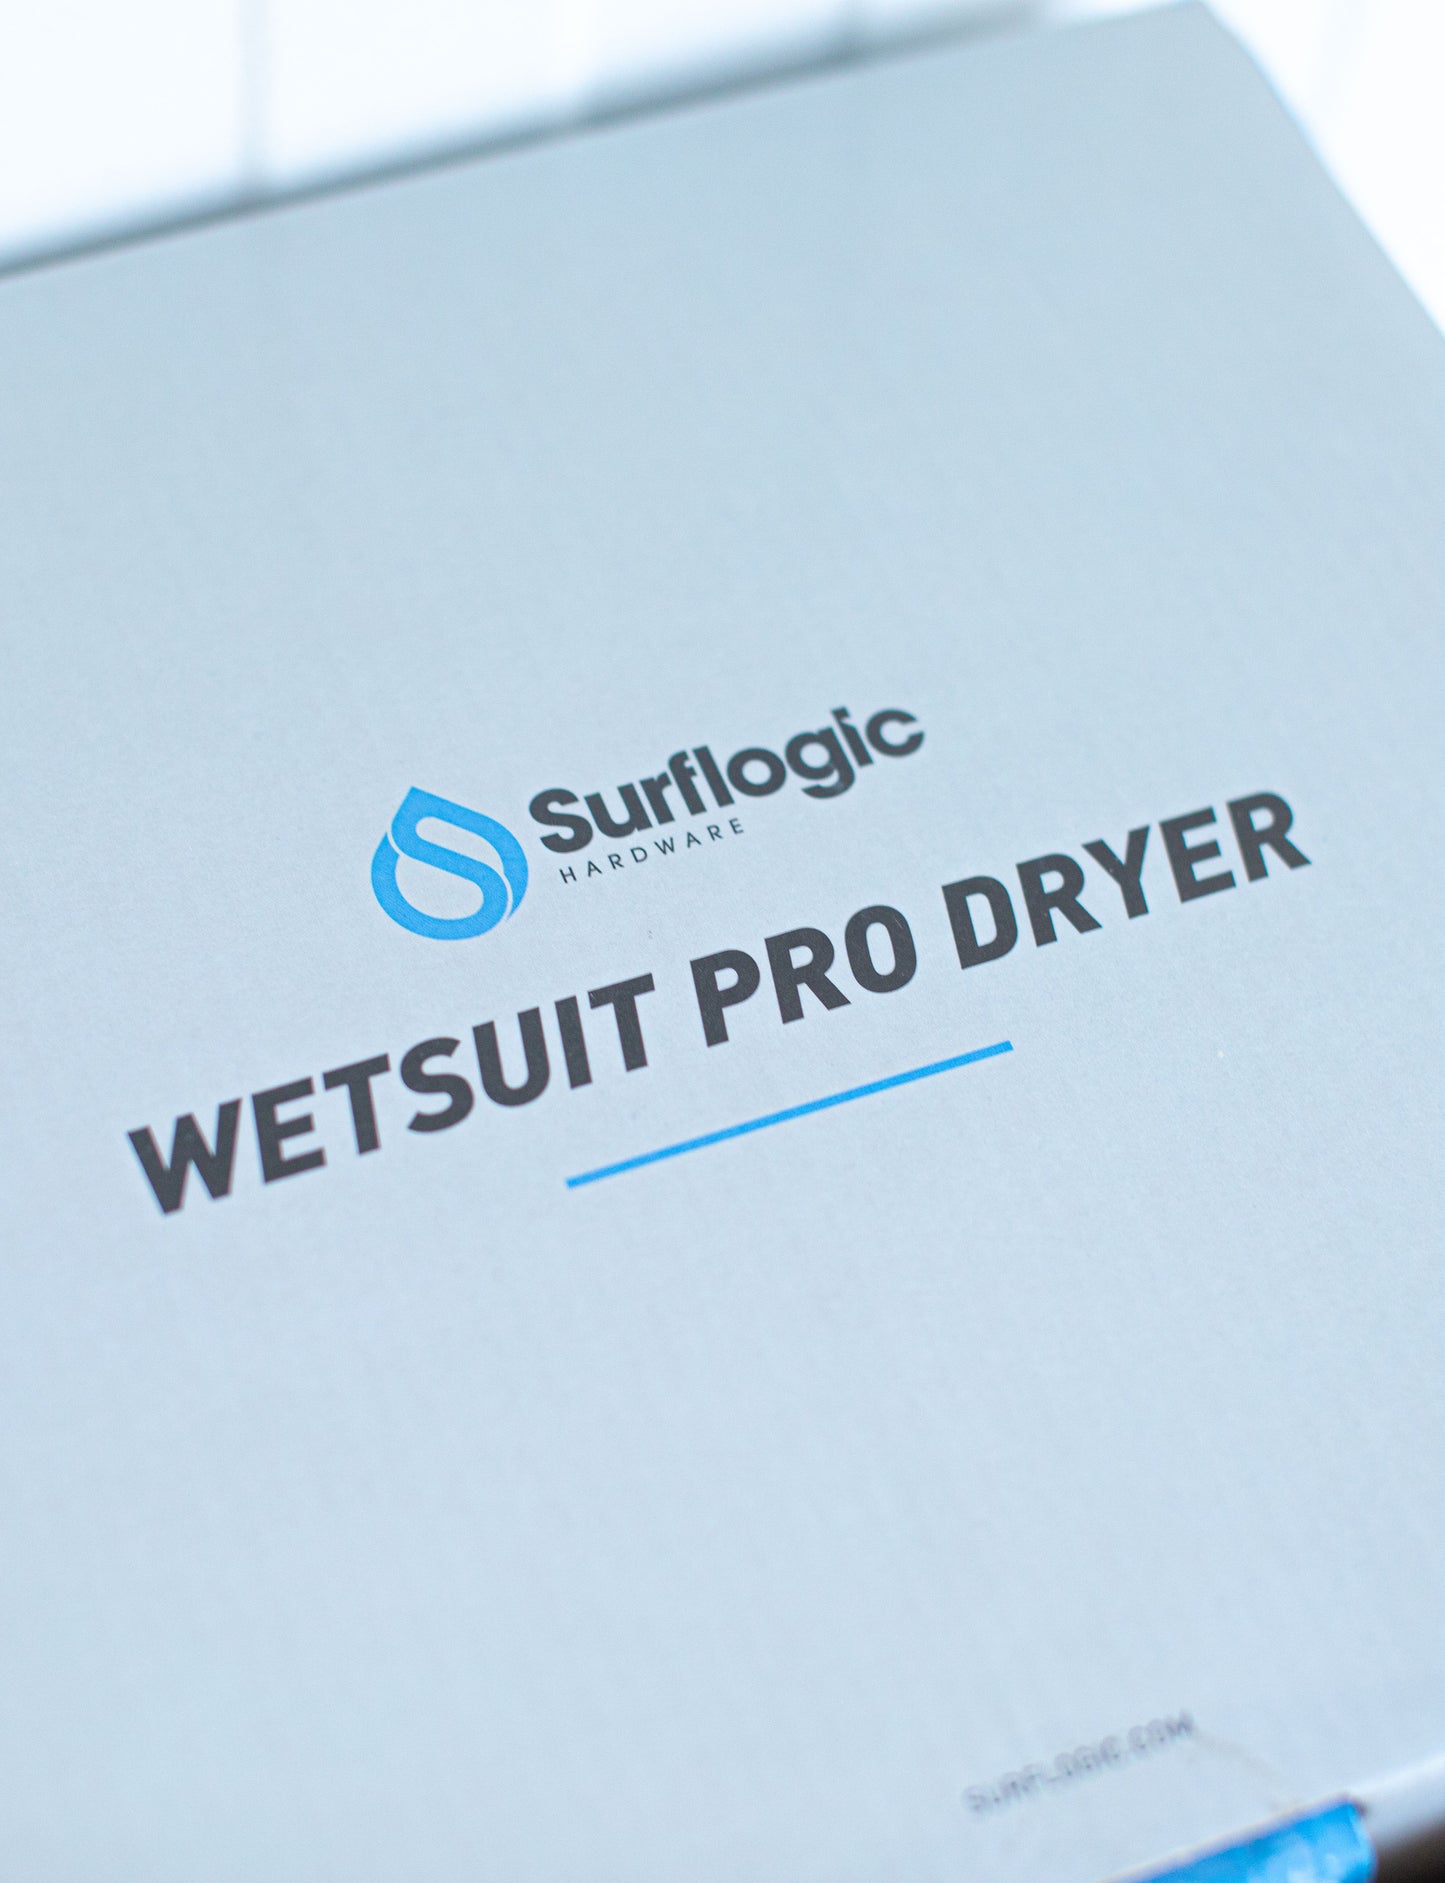 
                  
                    Pukas surf shop - Surflogic - Wetsuit Pro Dryer
                  
                